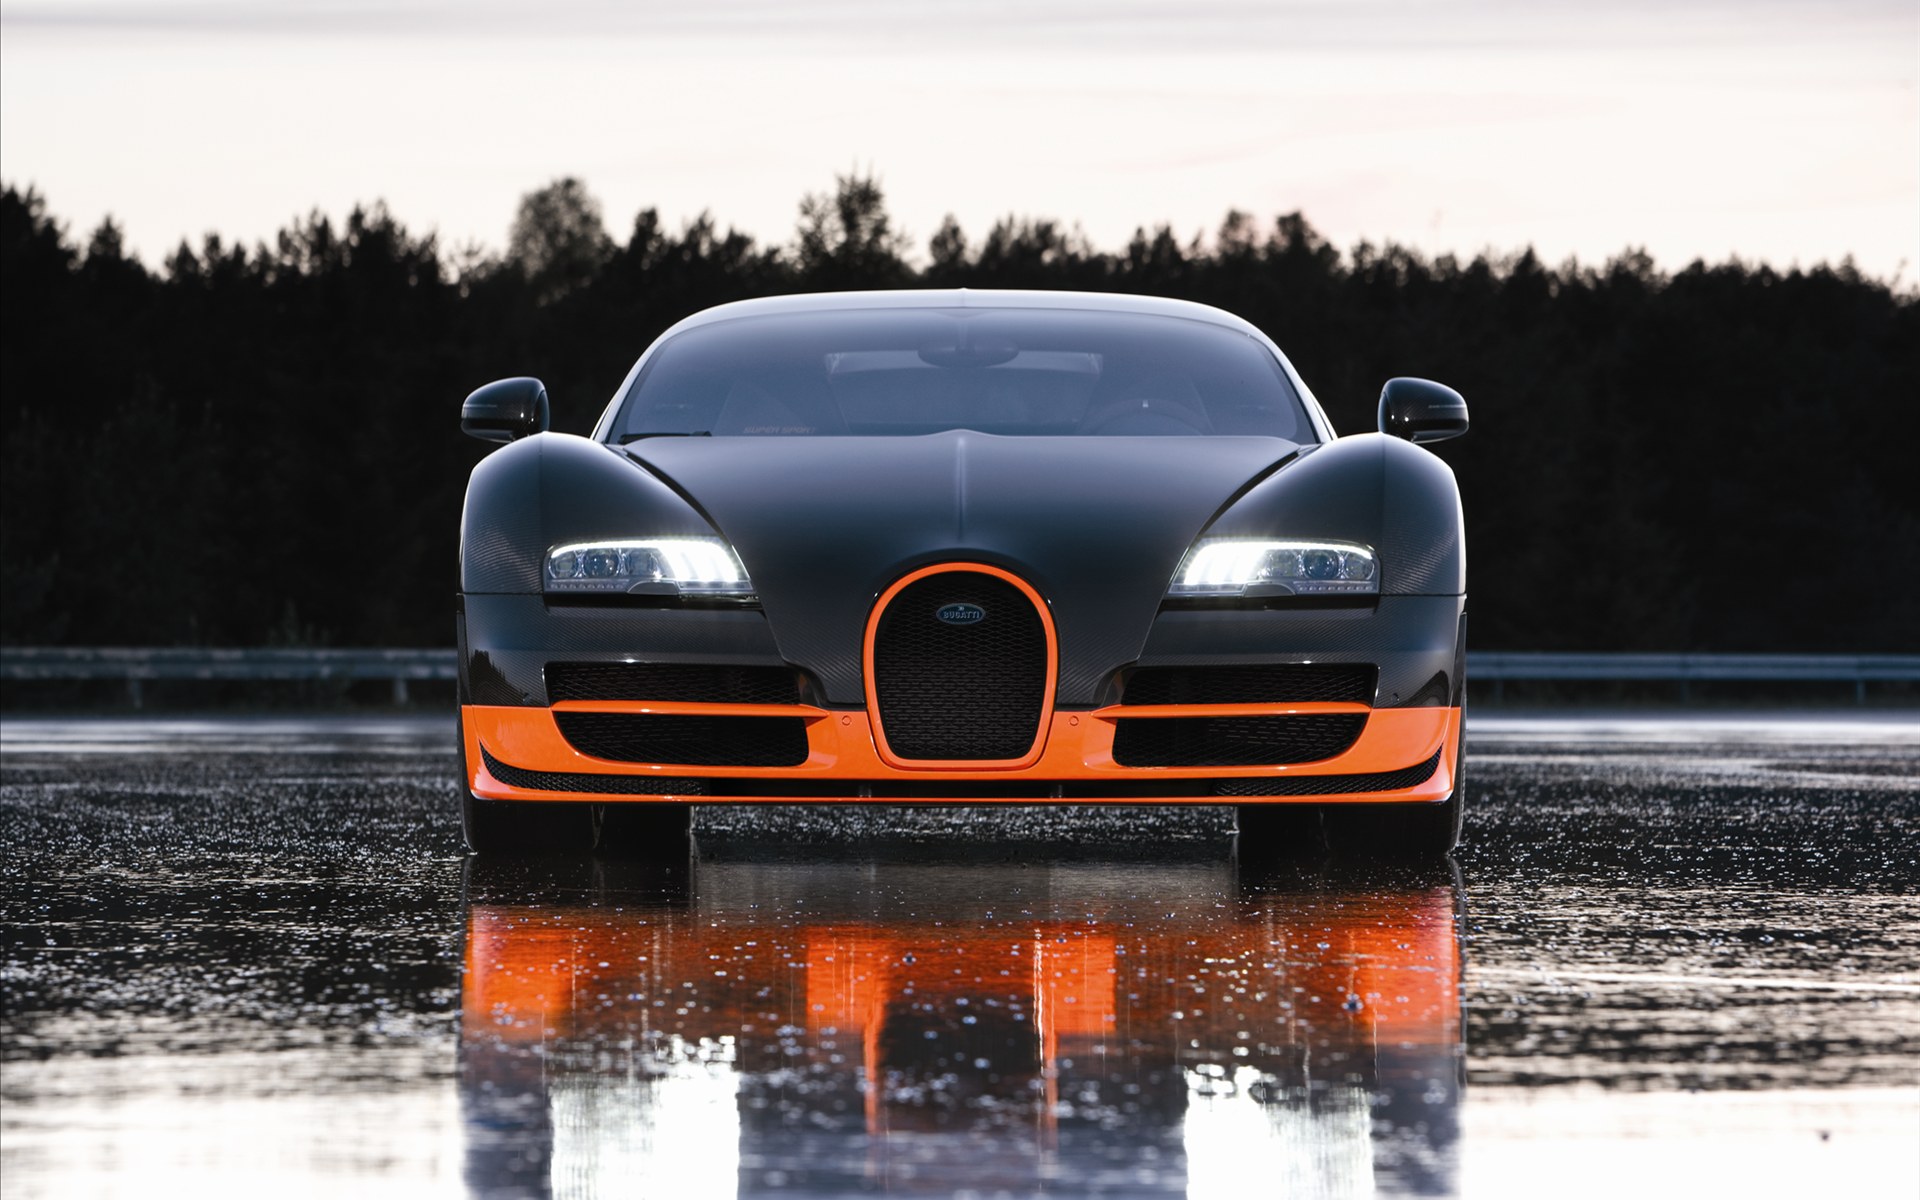 Bugatti Veyron(ӵ) 16.4 Super Sports Car 2011(ֽ15)